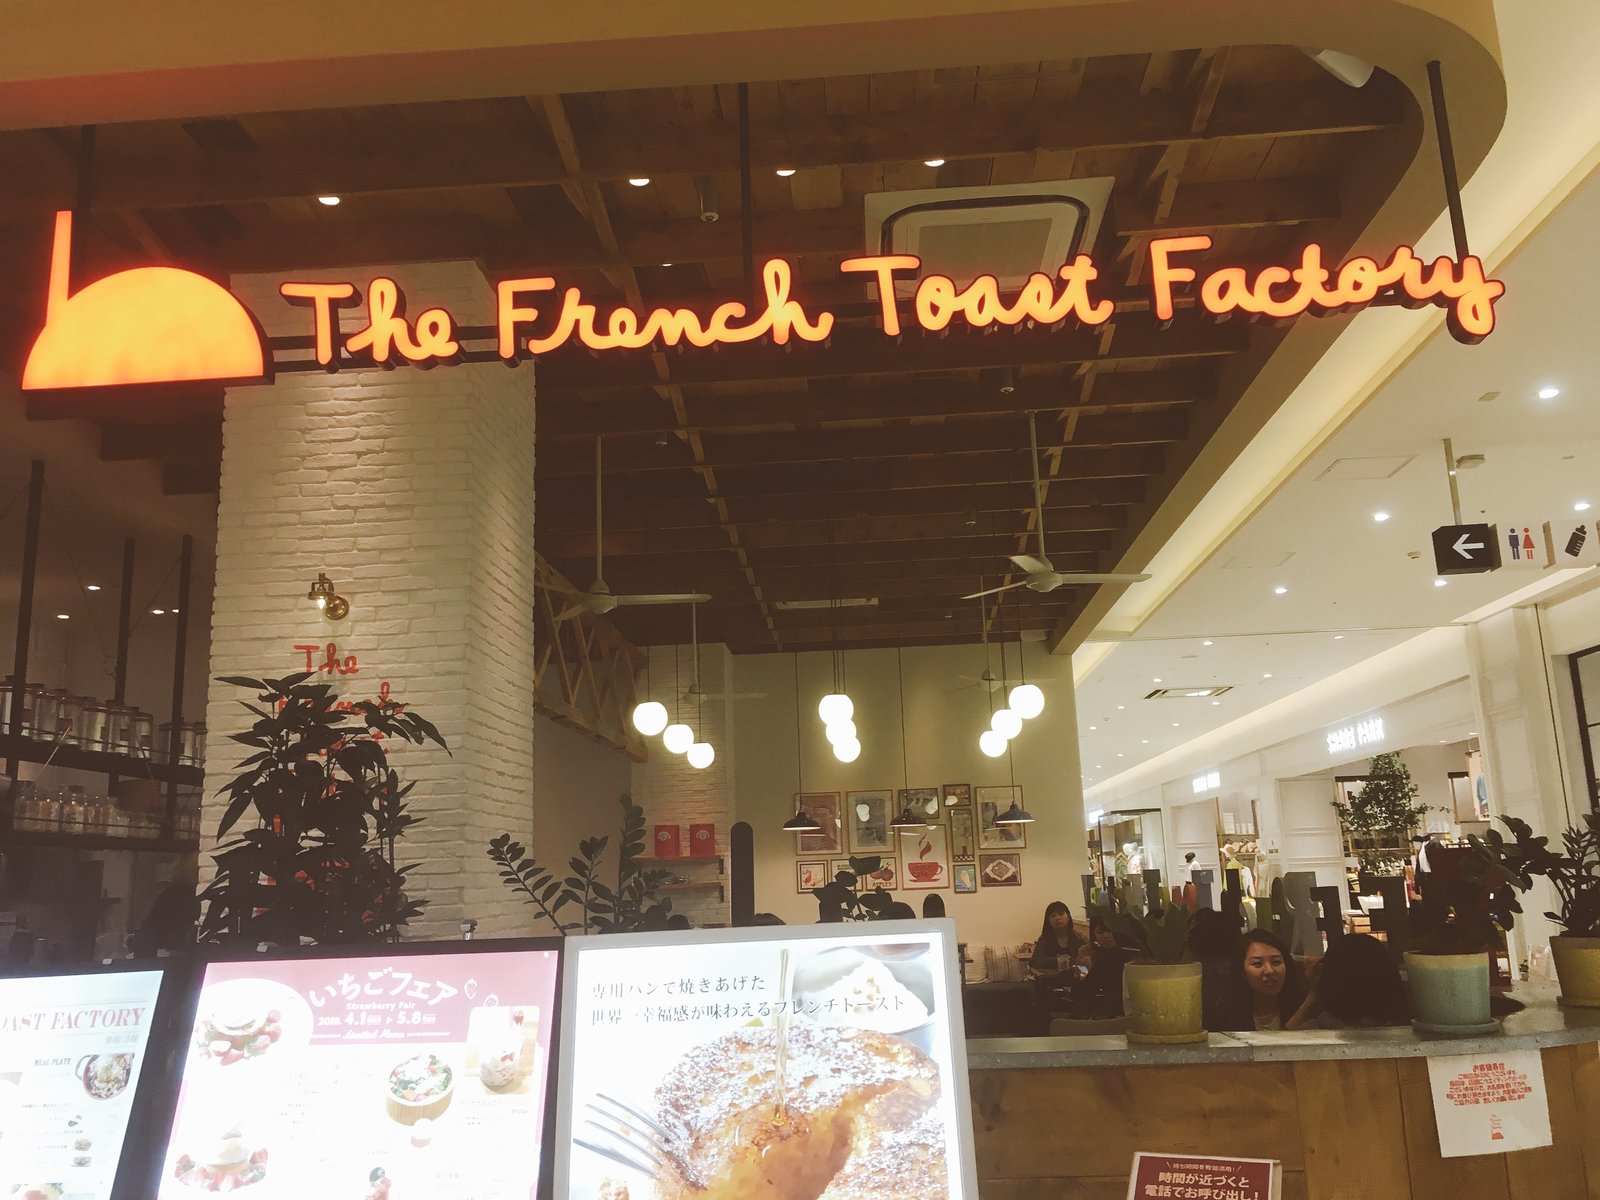 武蔵小杉 フレンチトースト店 The French Toast Factory でのんびりランチ Playlife プレイライフ